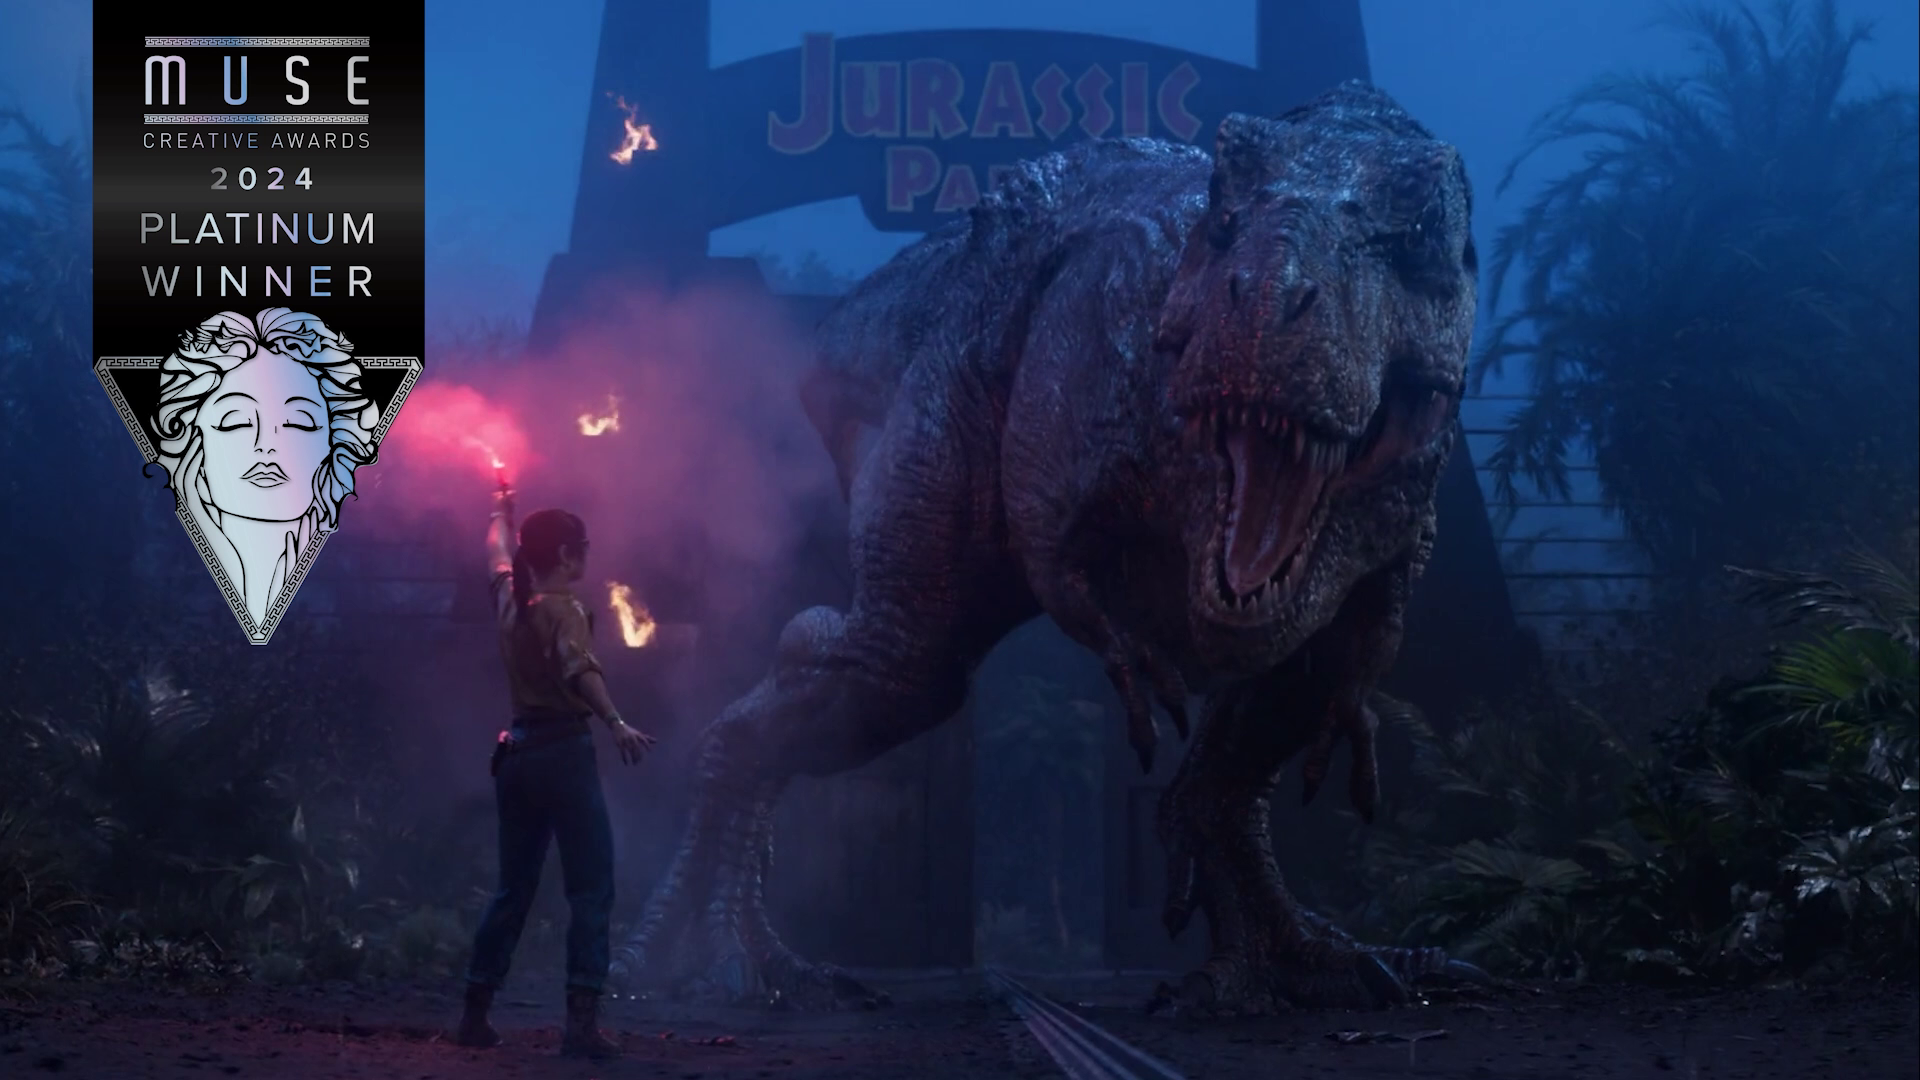 Jurassic Park: Survival Trailer Wins Muse Award